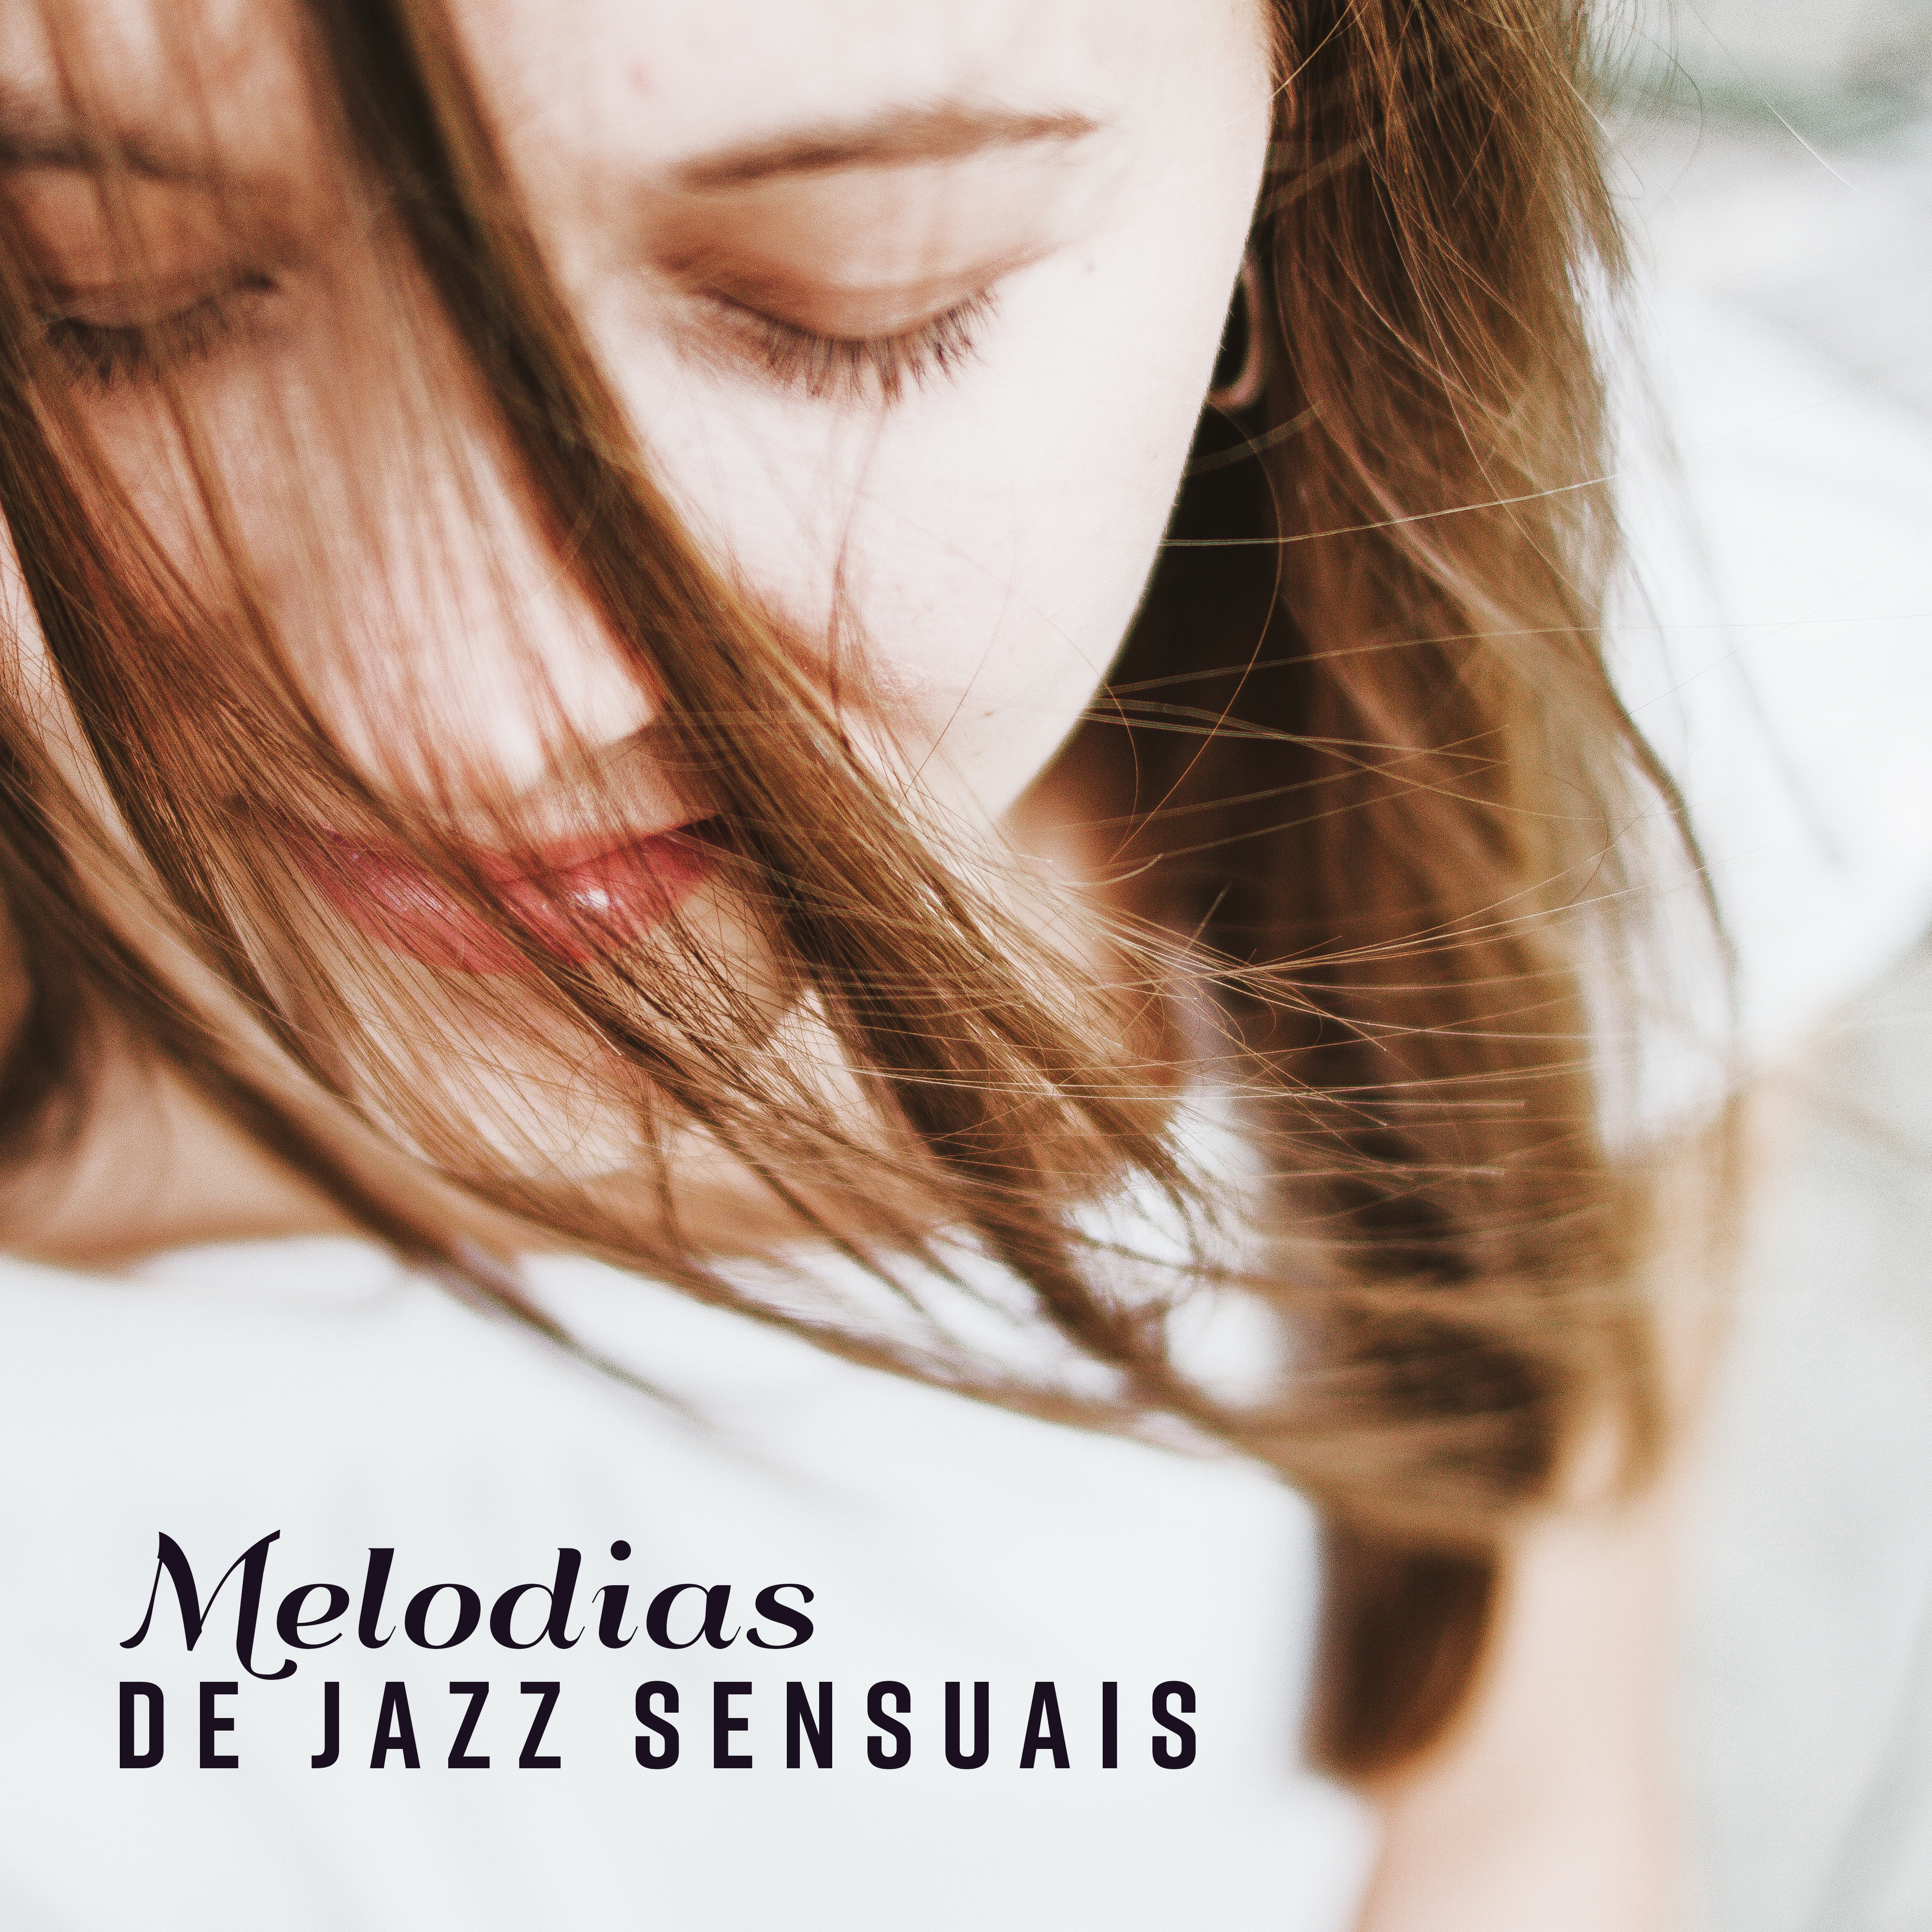 Melodias de Jazz Sensuais